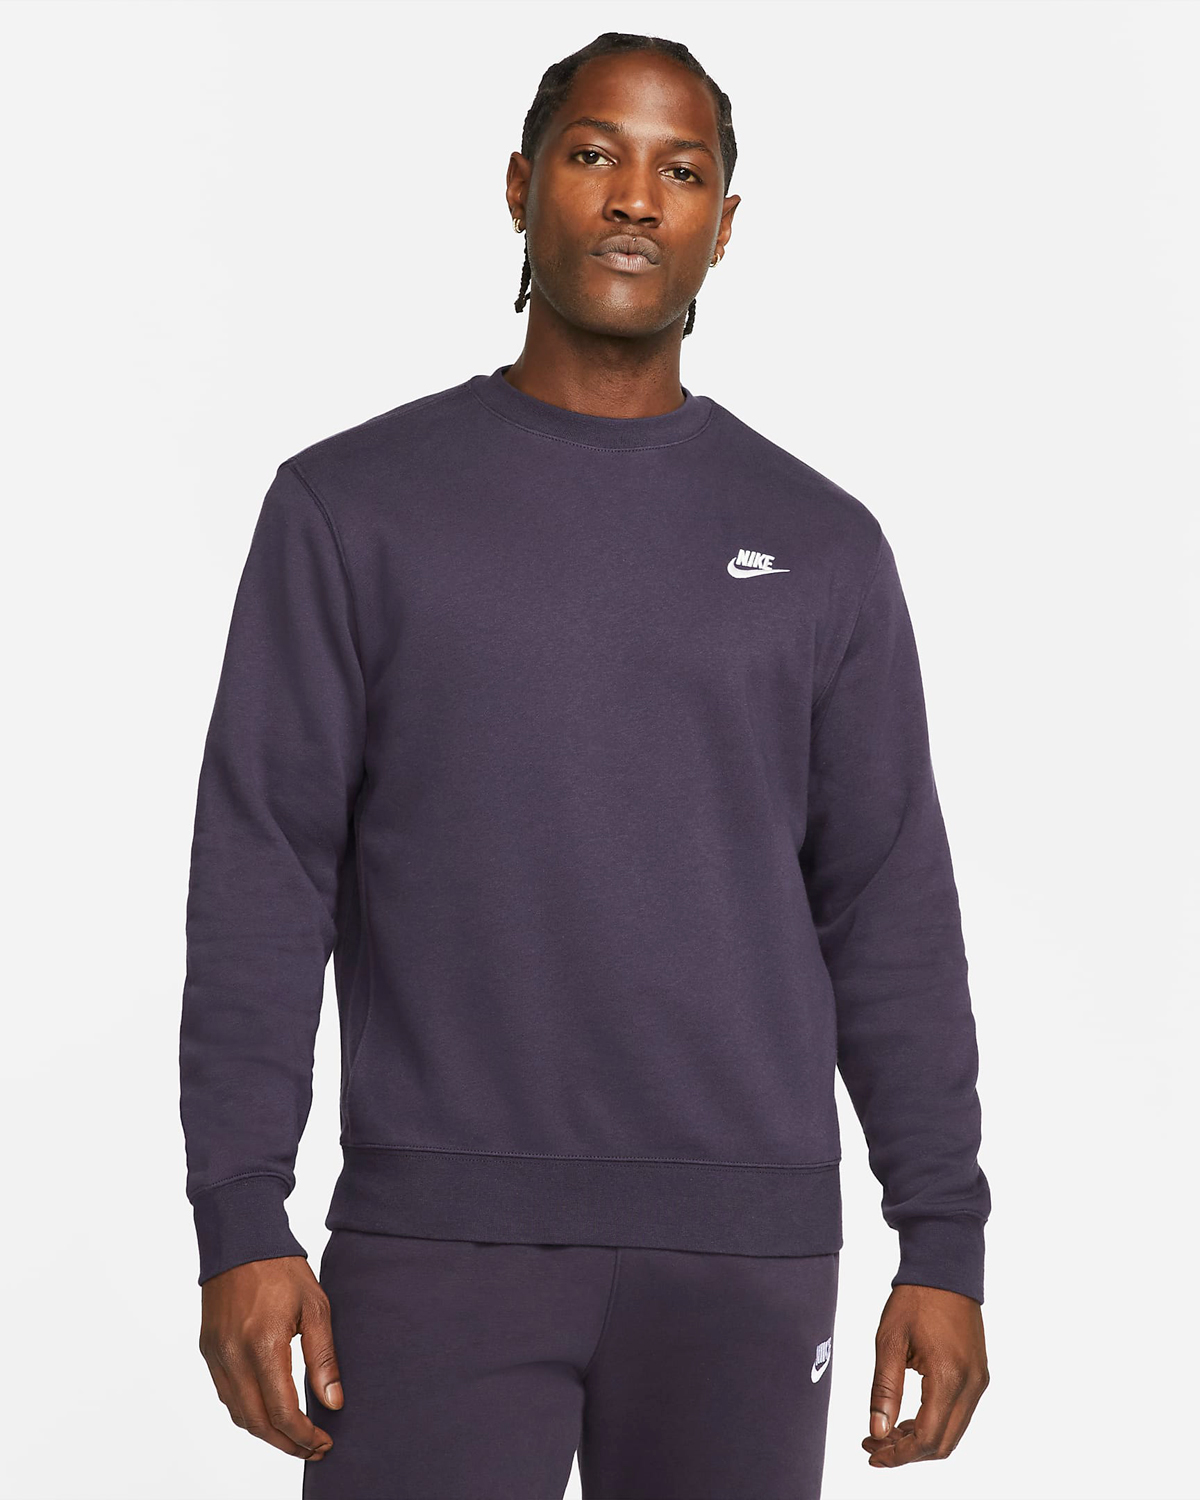 Nike-Club-Fleece-Crew-Sweatshirt-Cave-Purple